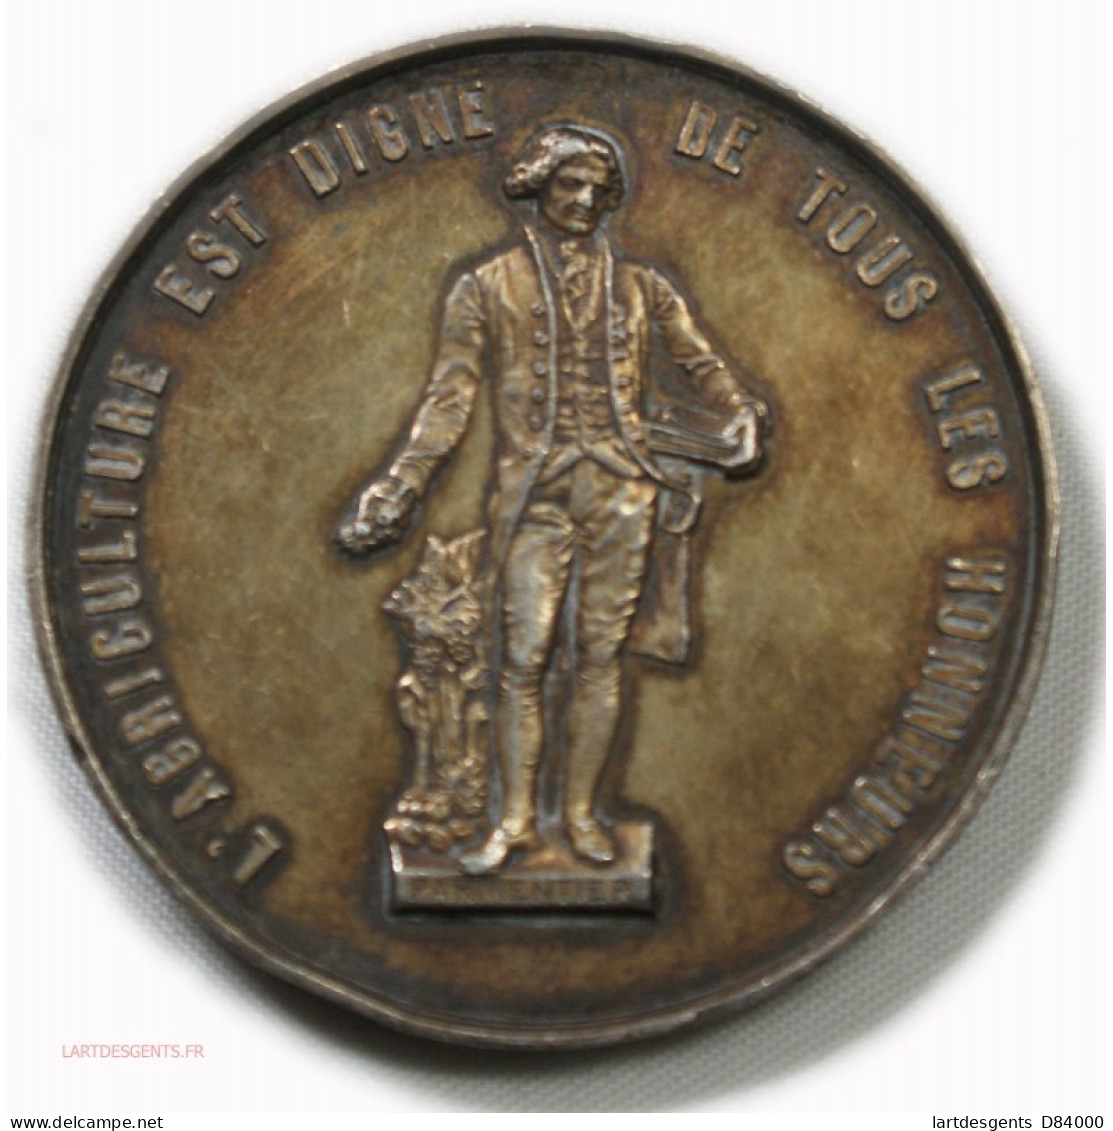 Médaille Argent, L'agriculture Est Digne De Tous Les Honneurs, Vouziers - Firmen